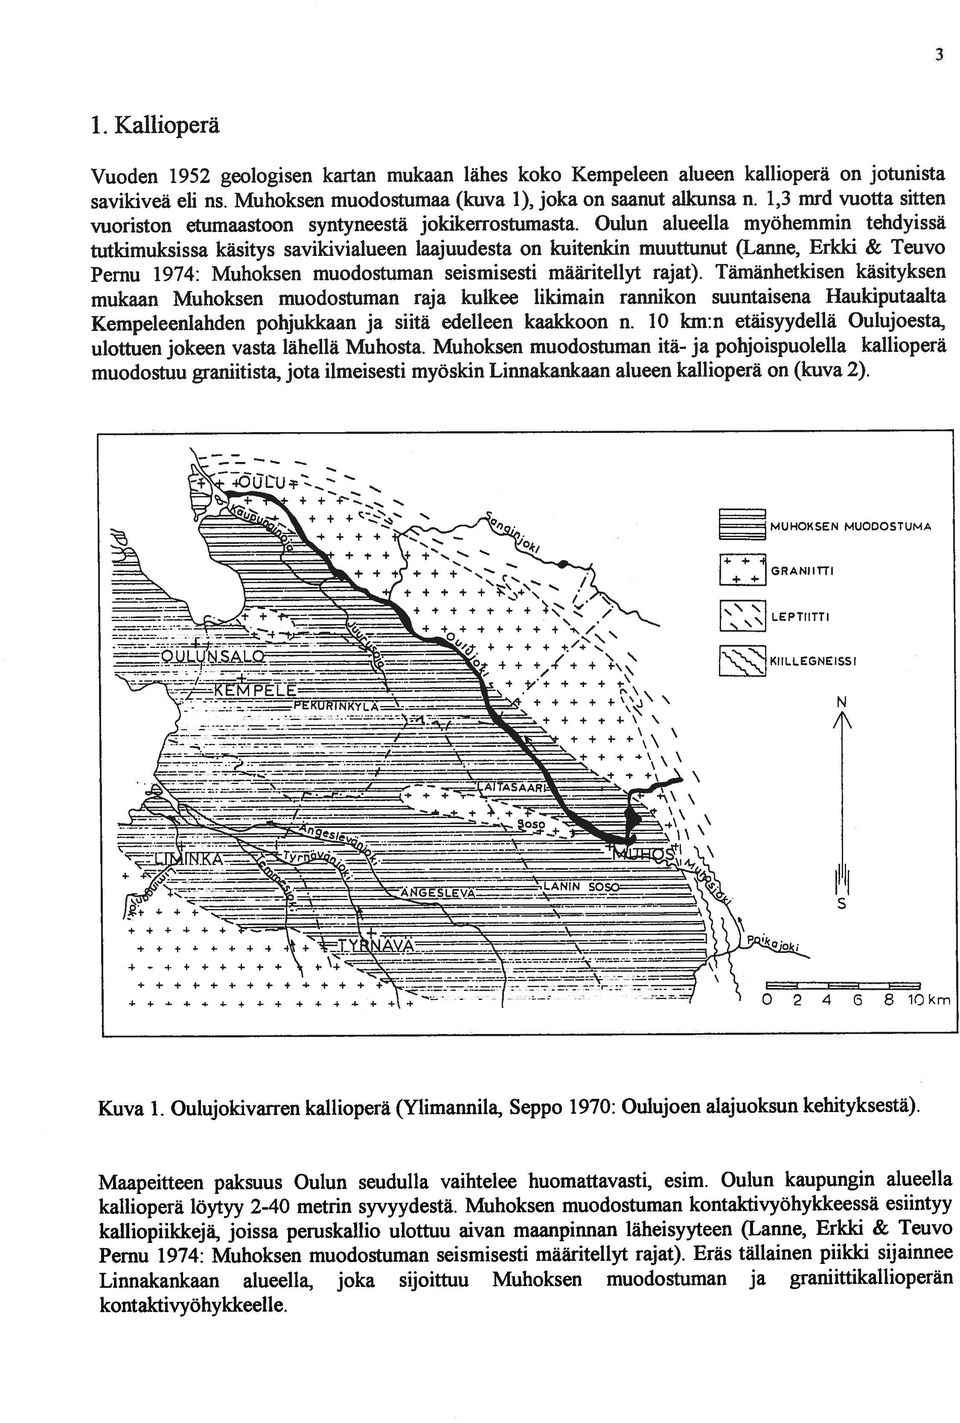 Oulun alueella myöhemmin tehdyissä tutkimuksissa käsitys savikivialueen laajuudesta on kuitenkin muuttunut (Lanne, Erkki & Teuvo Pernu 1974: Muhoksen muodostuman seismisesti määritellyt rajat).